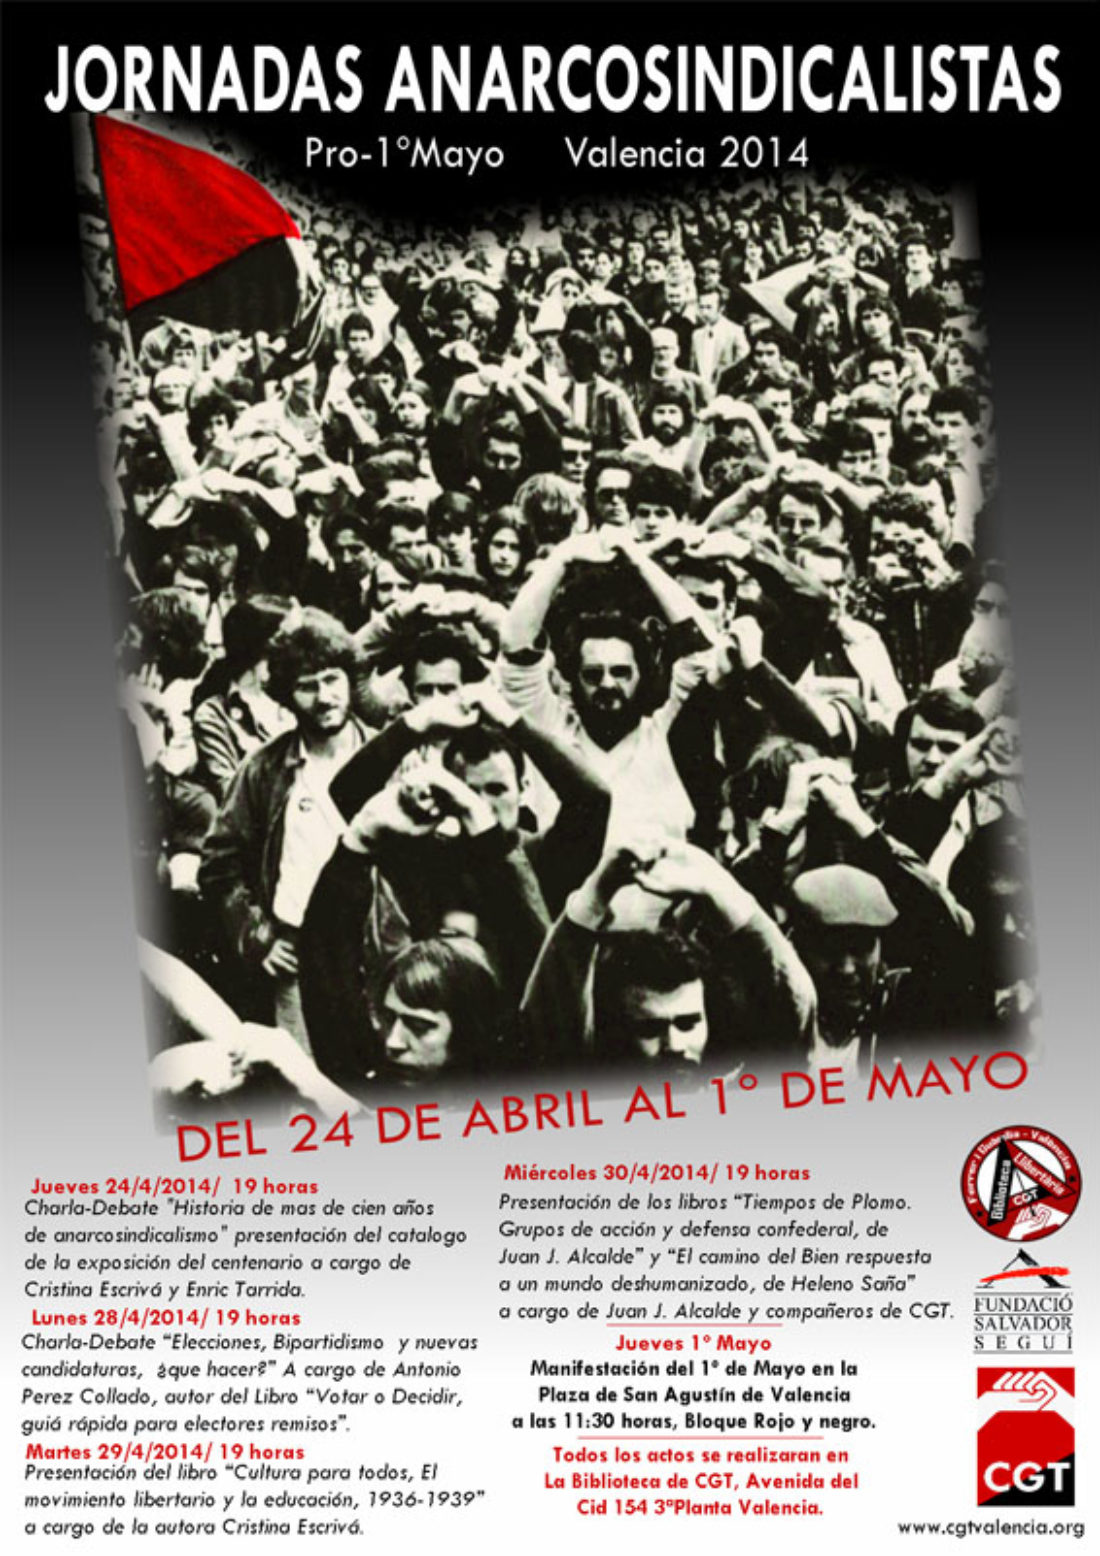 Jornadas Anarcosindicalistas, del 24 de Abril al 1º Mayo Valencia 2014